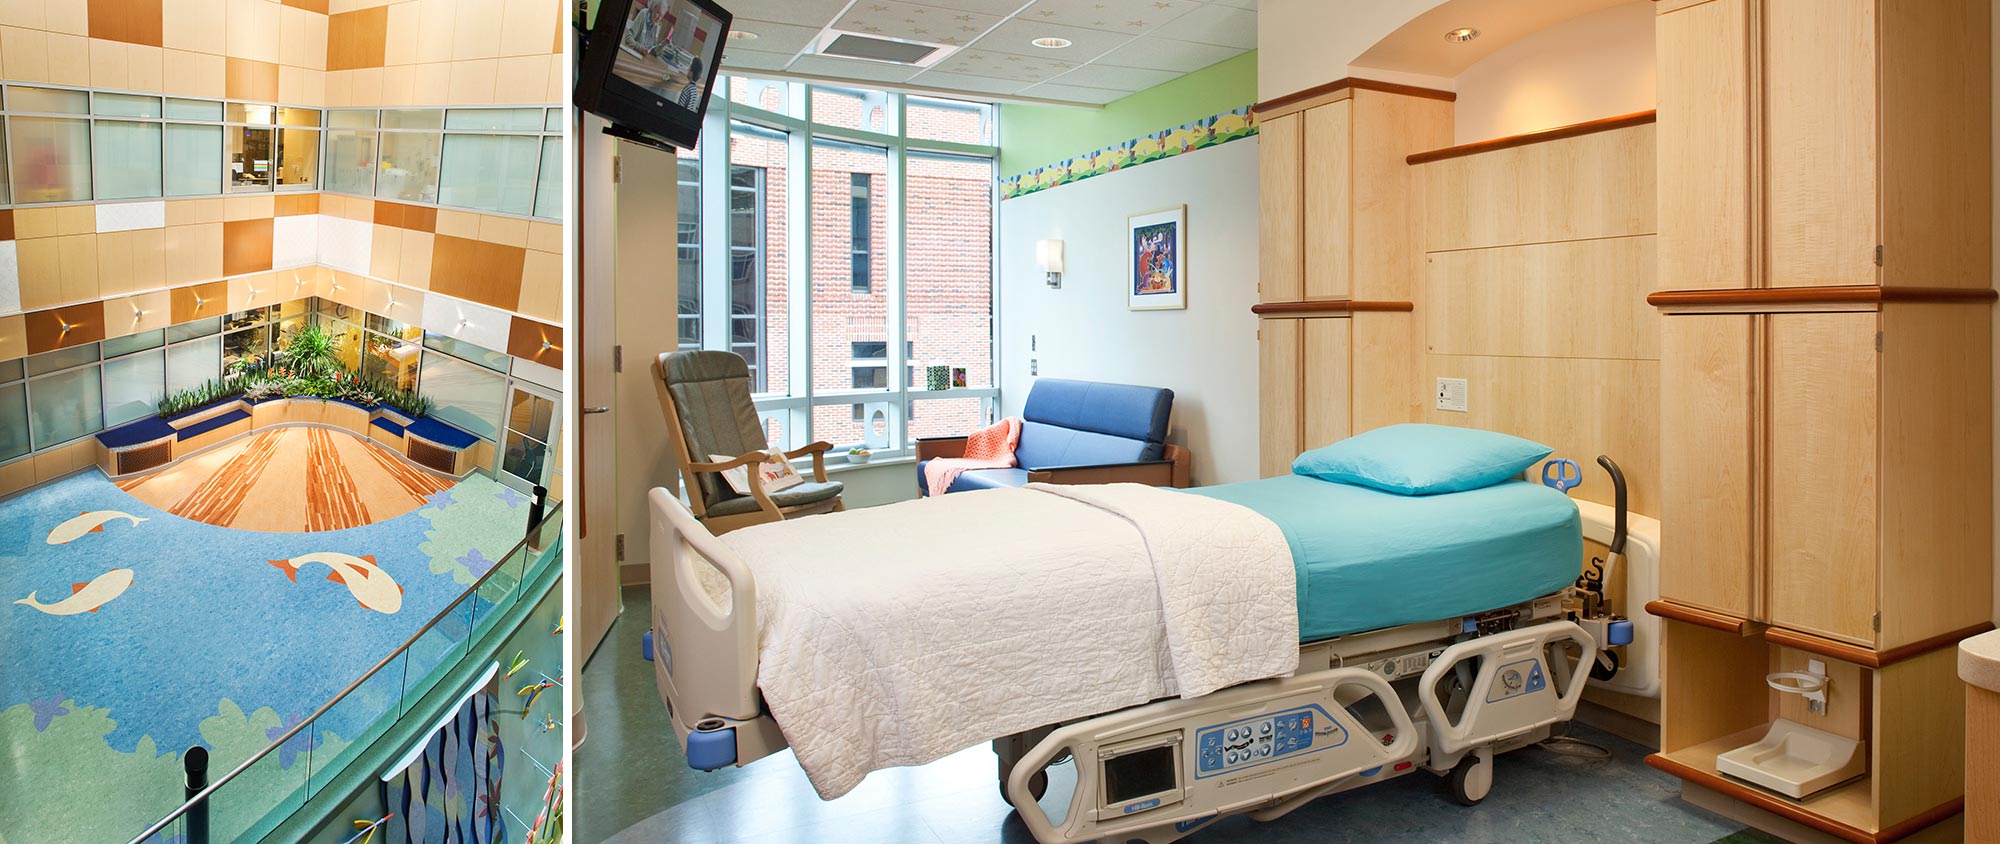 Monroe Carell Jr. Children’s Hospital at Vanderbilt, Bed Expansion